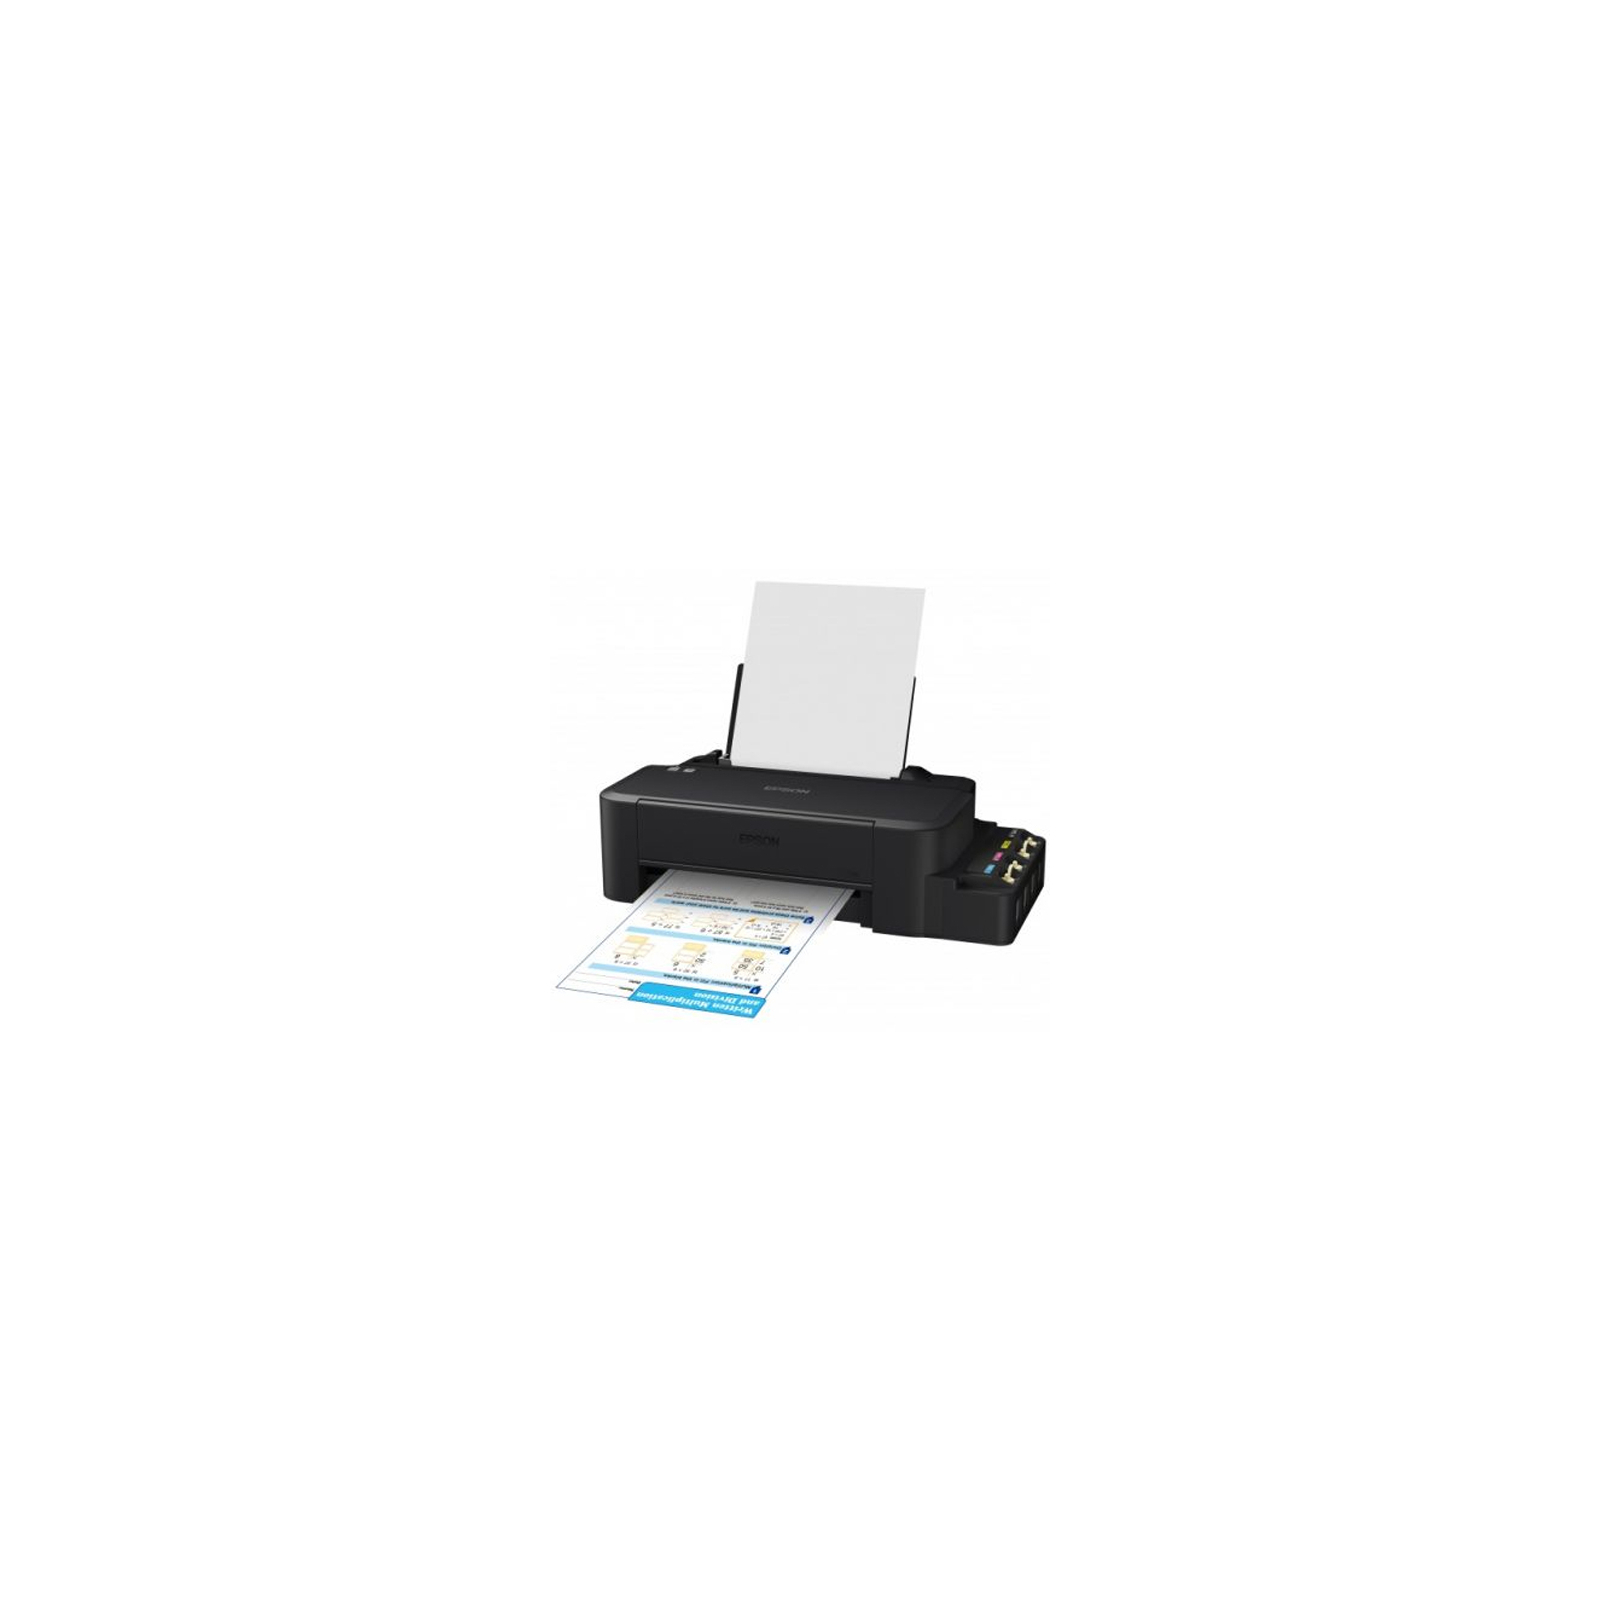 Струменевий принтер Epson L120 (C11CD76302) зображення 3